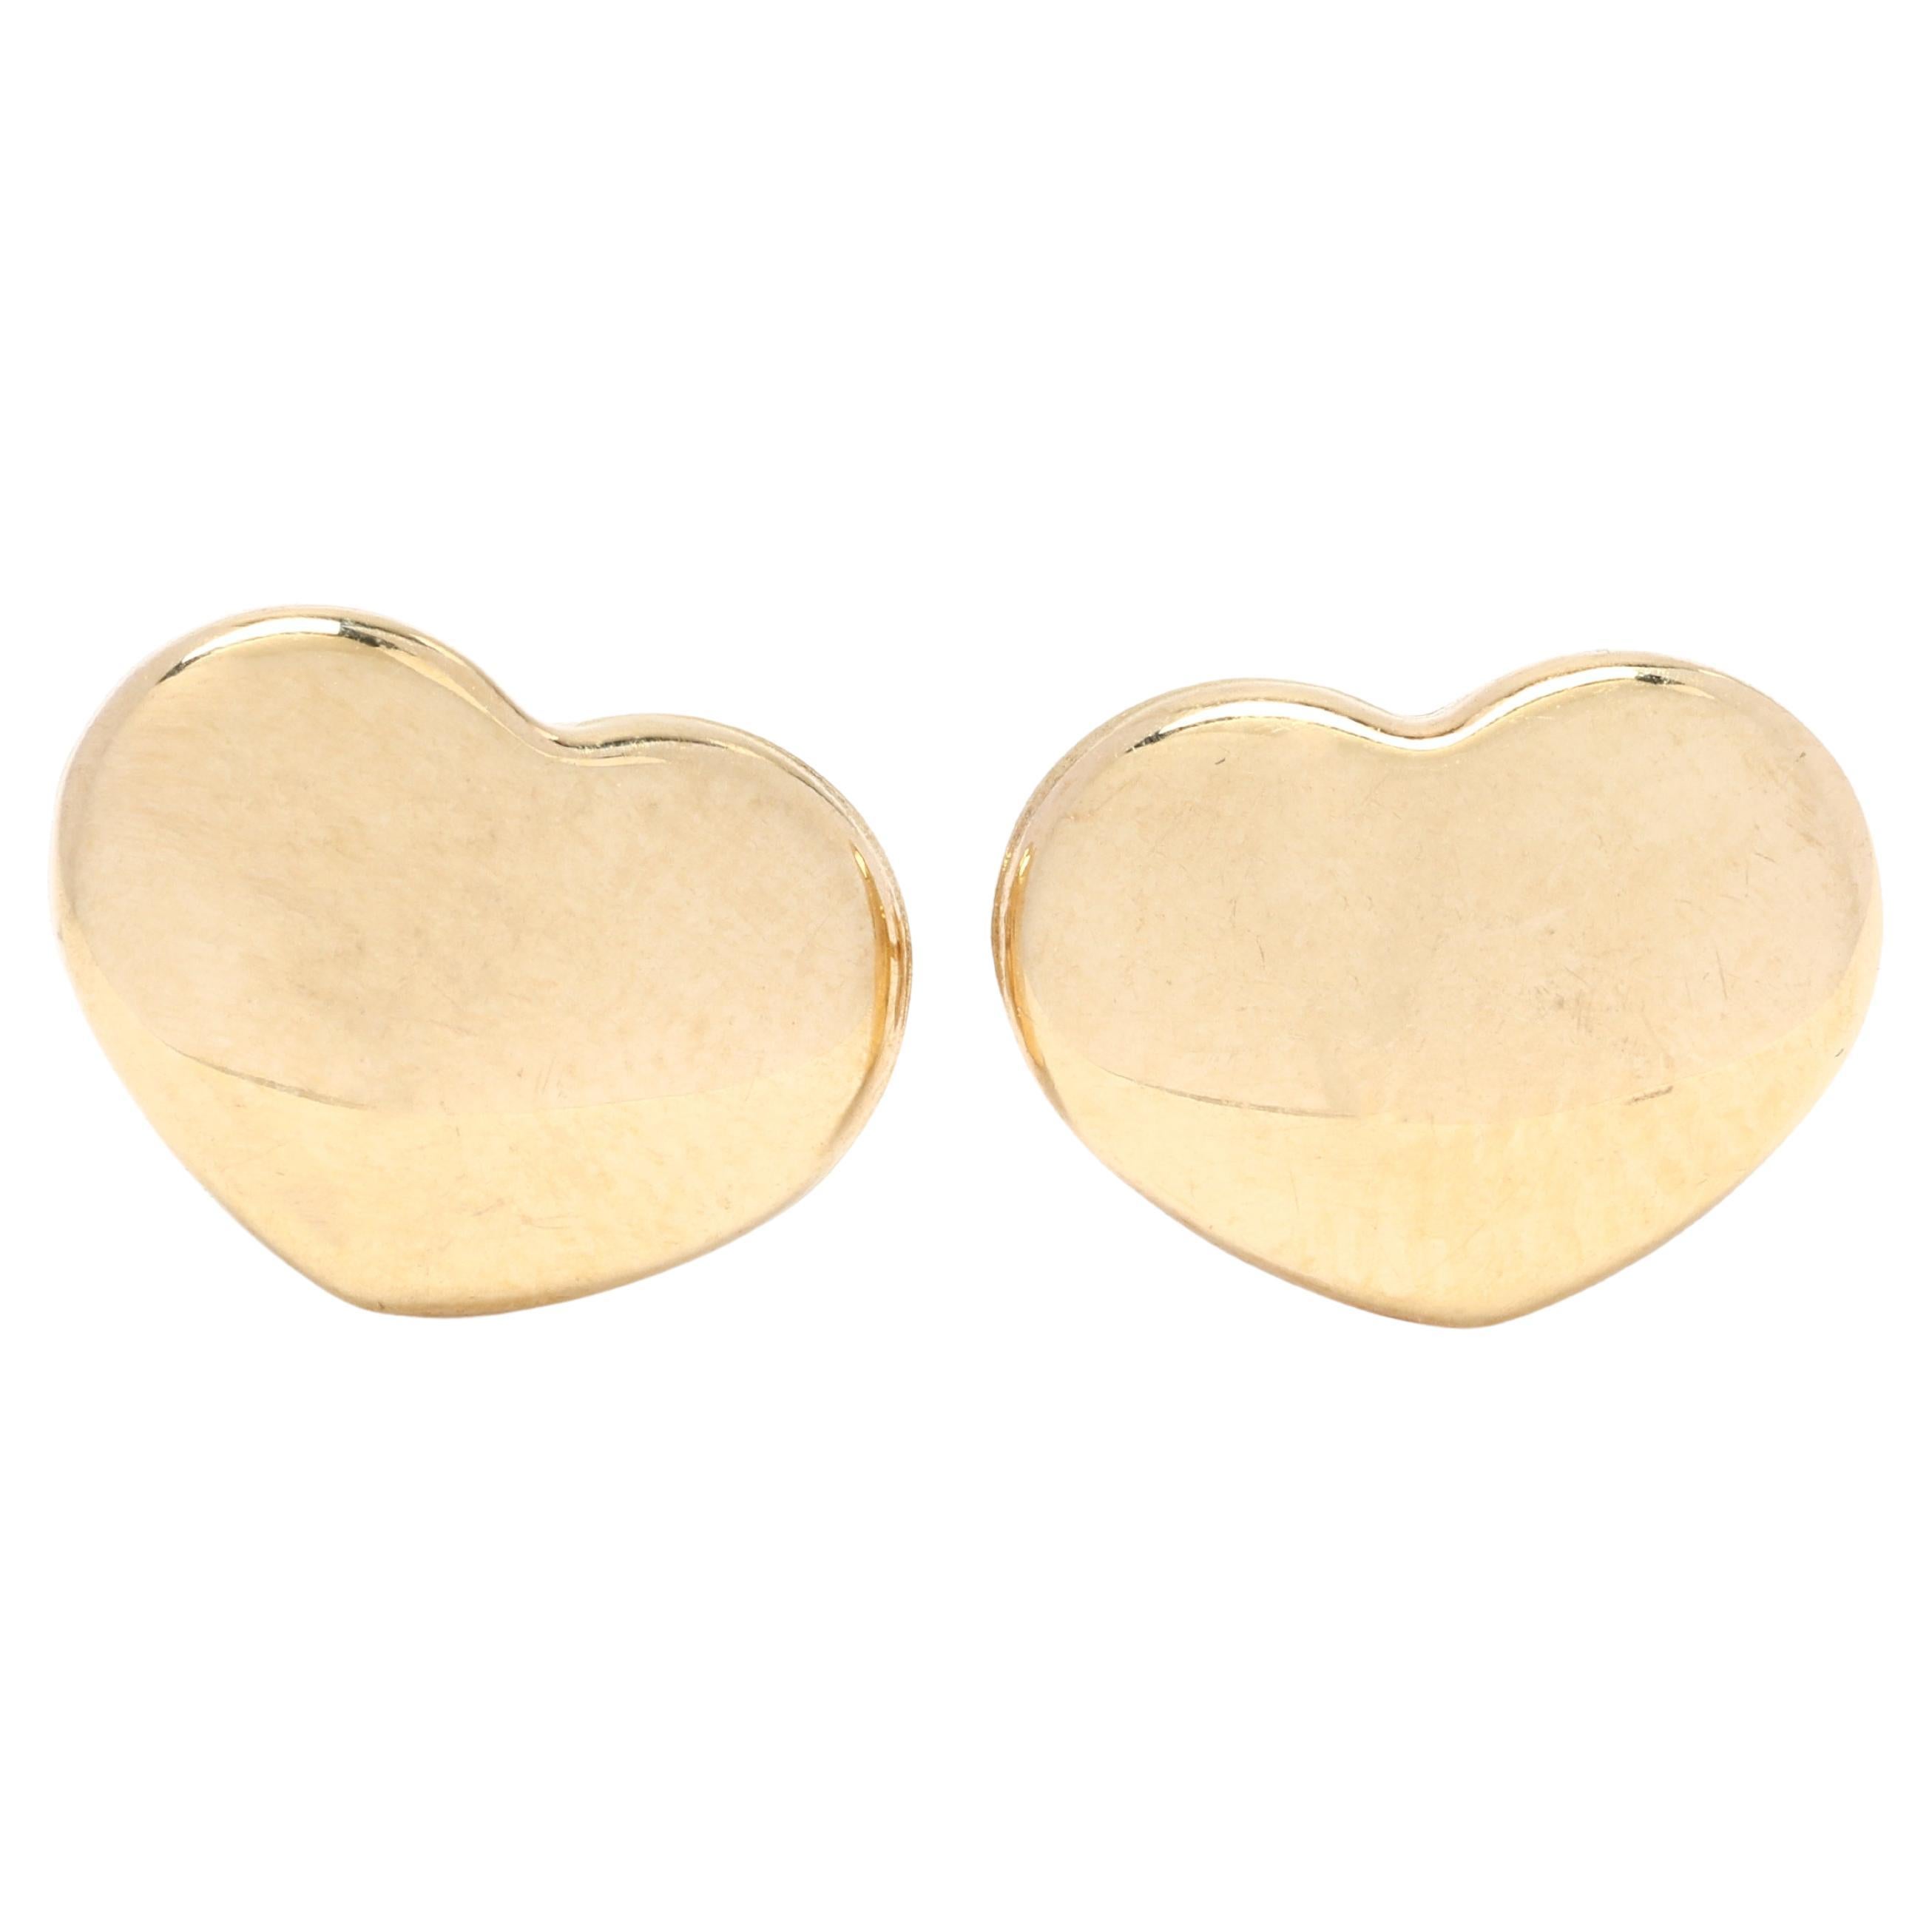 14k Yellow Gold Heart Earrings, Stud Earrings, Dainty and Lovely